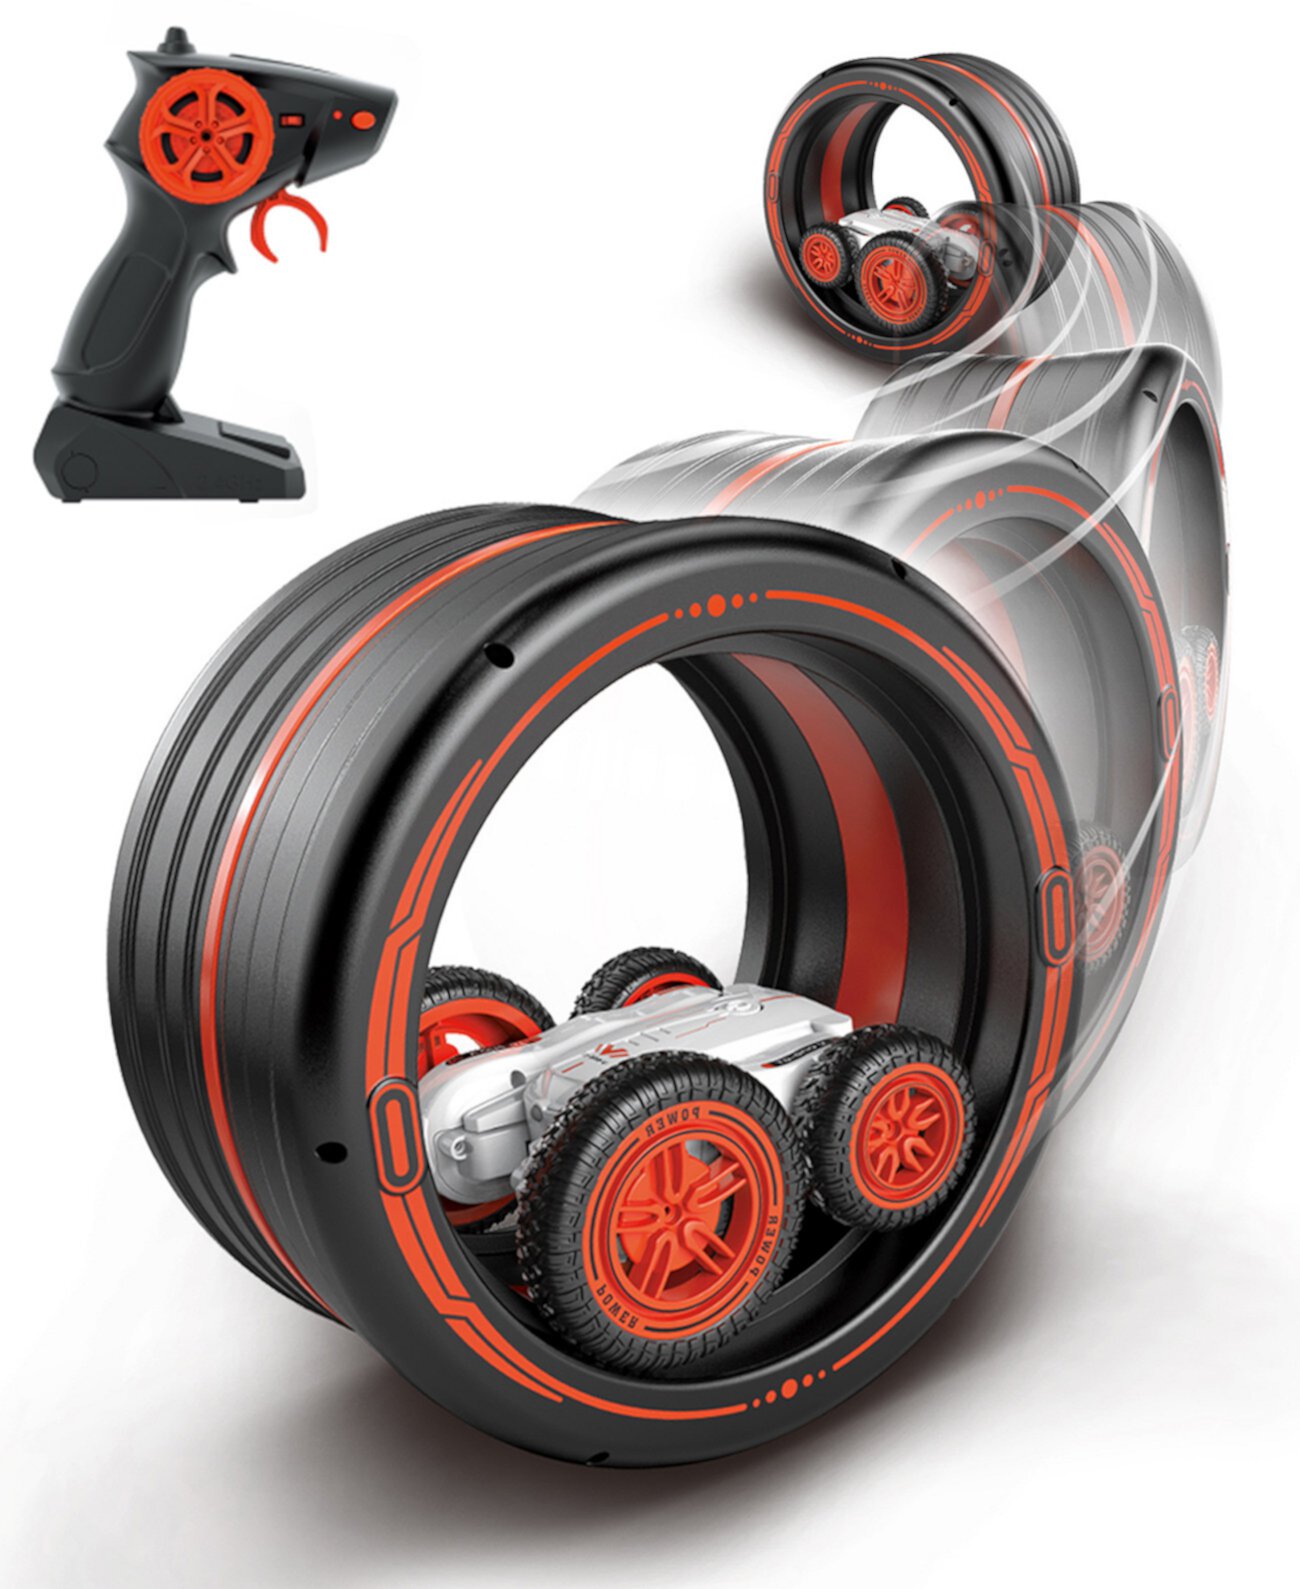 Пульт дистанционного управления Extreme Spin имеет уникальный дизайн, который позволяет ему выполнять трюки на двух колесах, вращаться на высоких скоростях и преодолевать препятствия, 5 шт. Jupiter Creations